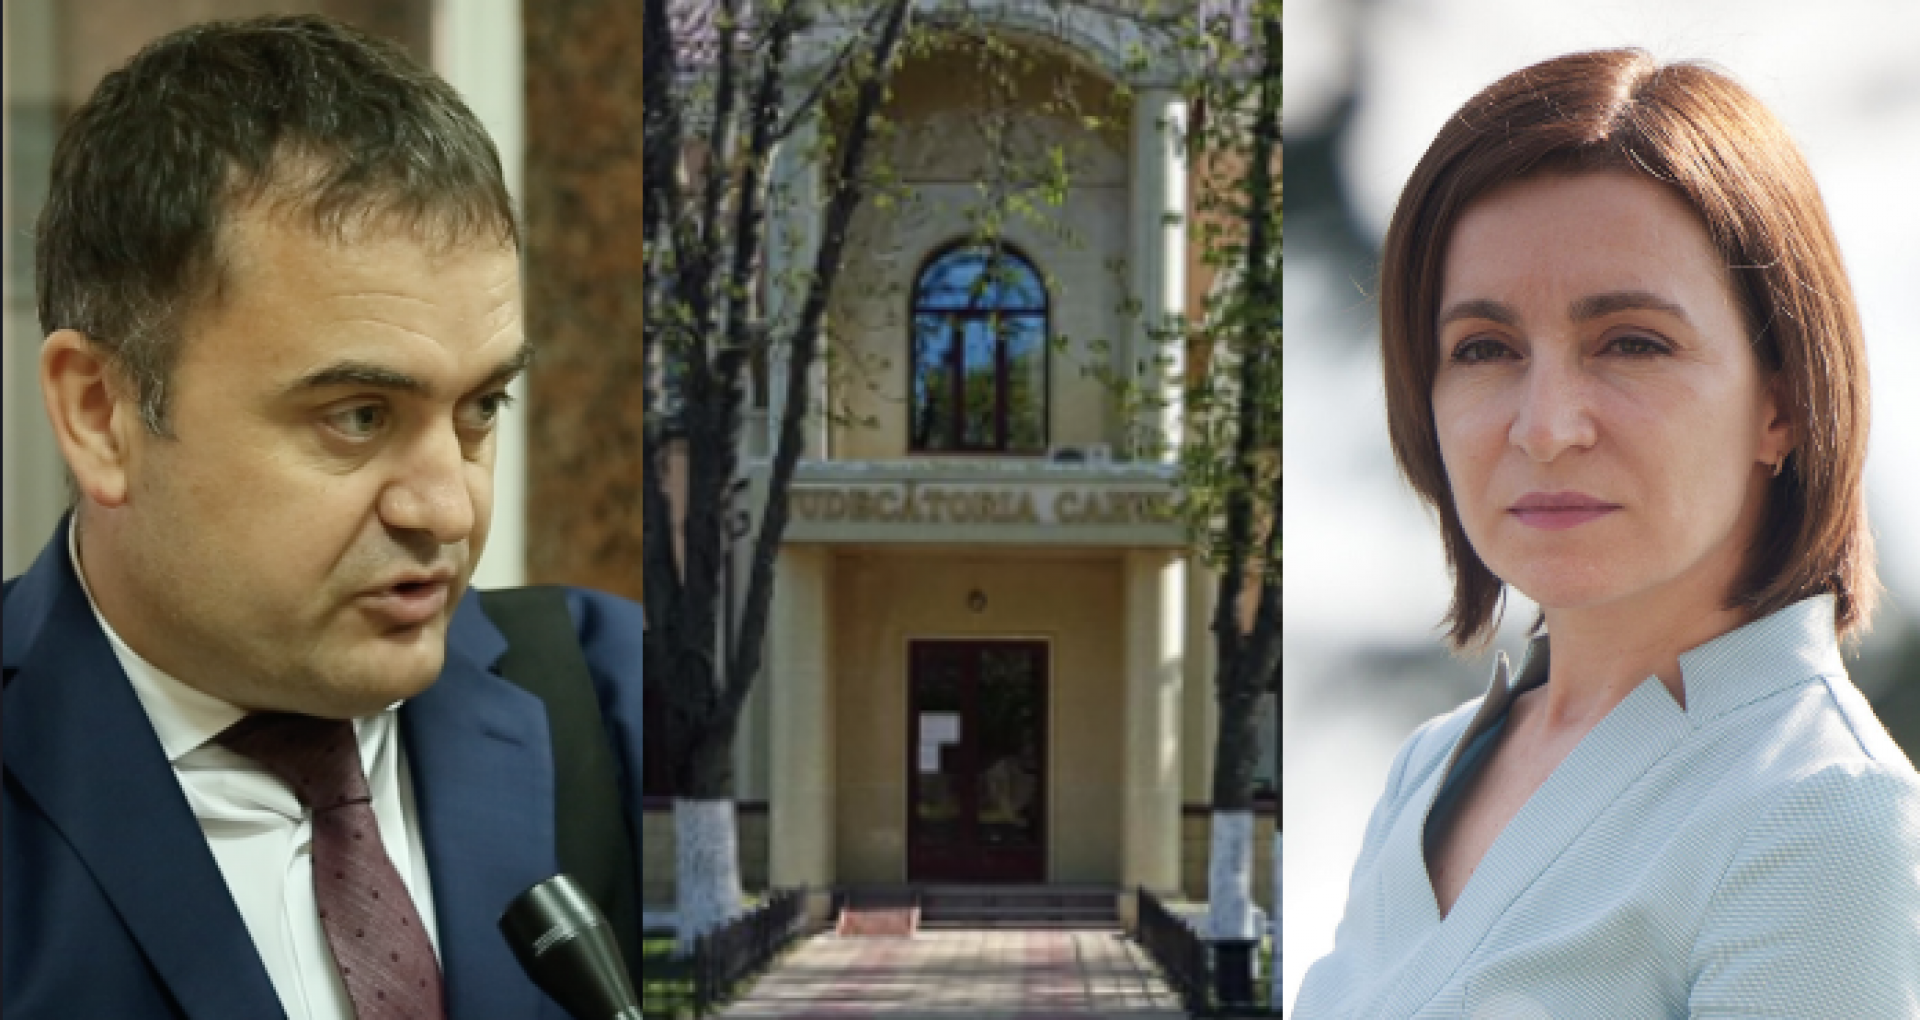 DOC/ CA Chișinău a admis strămutarea procesului dintre magistratul Clima și președinta Sandu de la Judecătoria Chișinău la Judecătoria Cahul. Dosarul, repartizat spre examinare